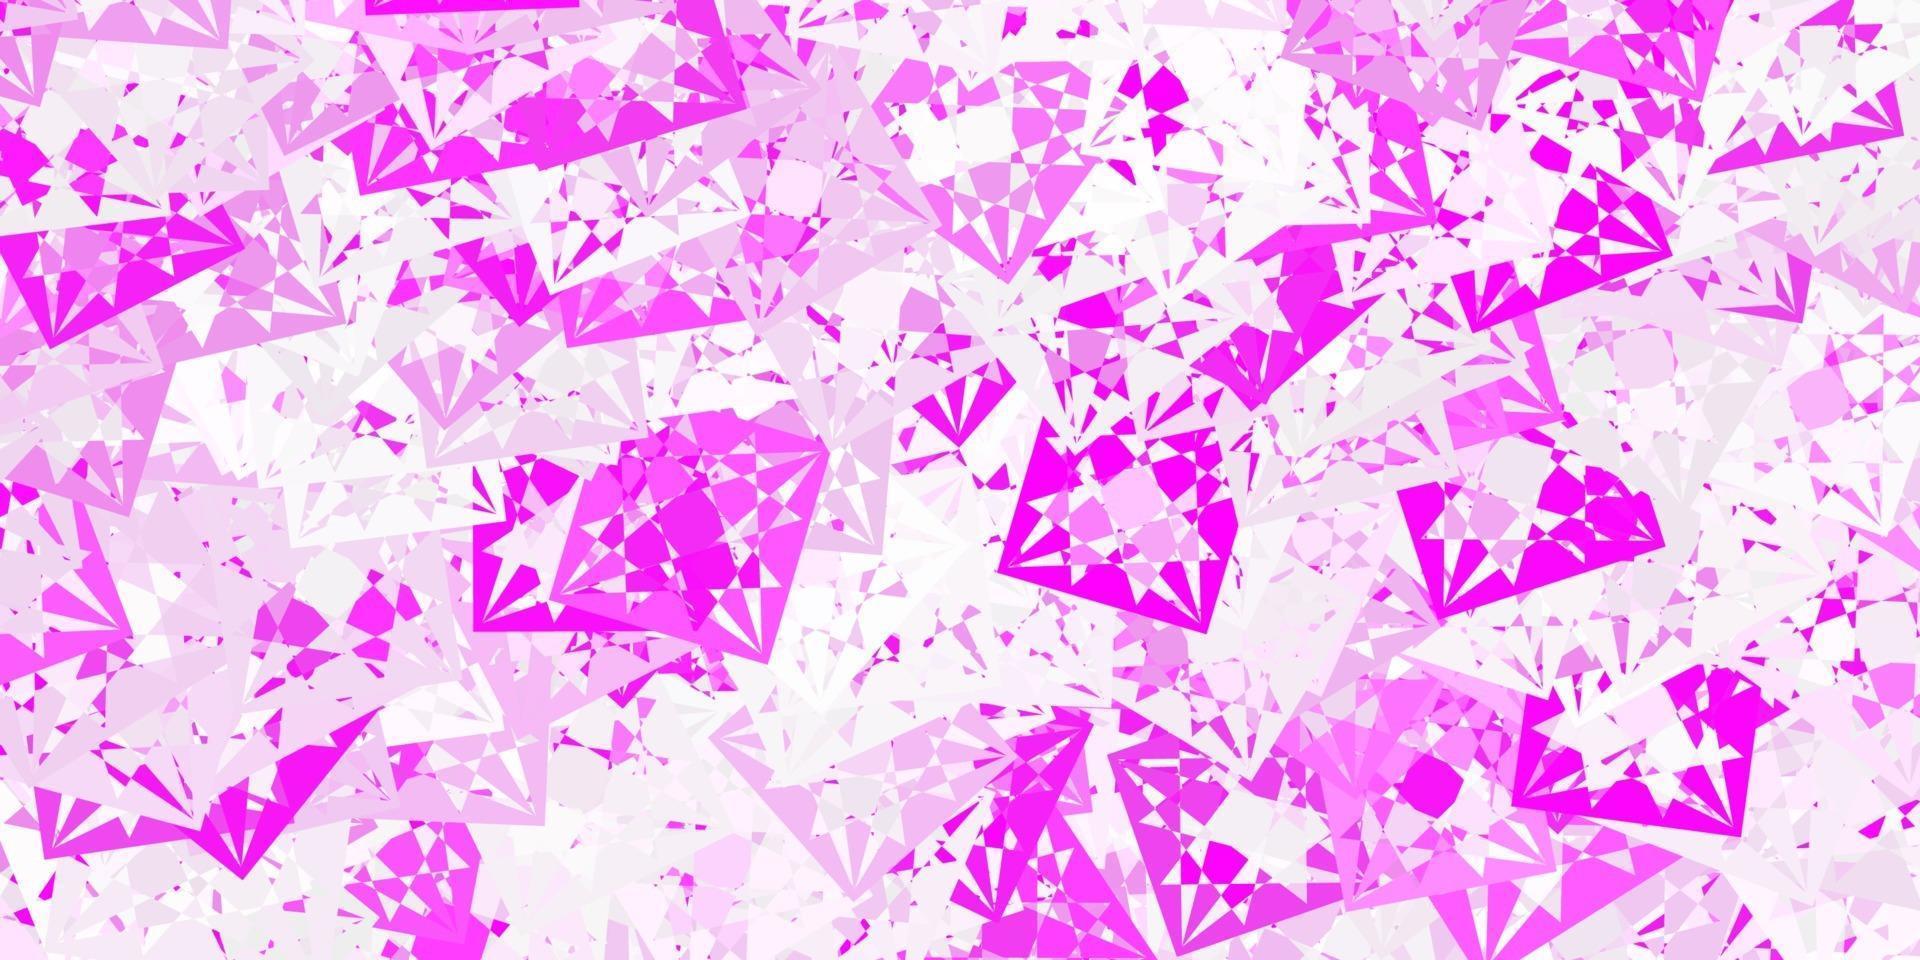 patrón de vector rosa claro con formas poligonales.